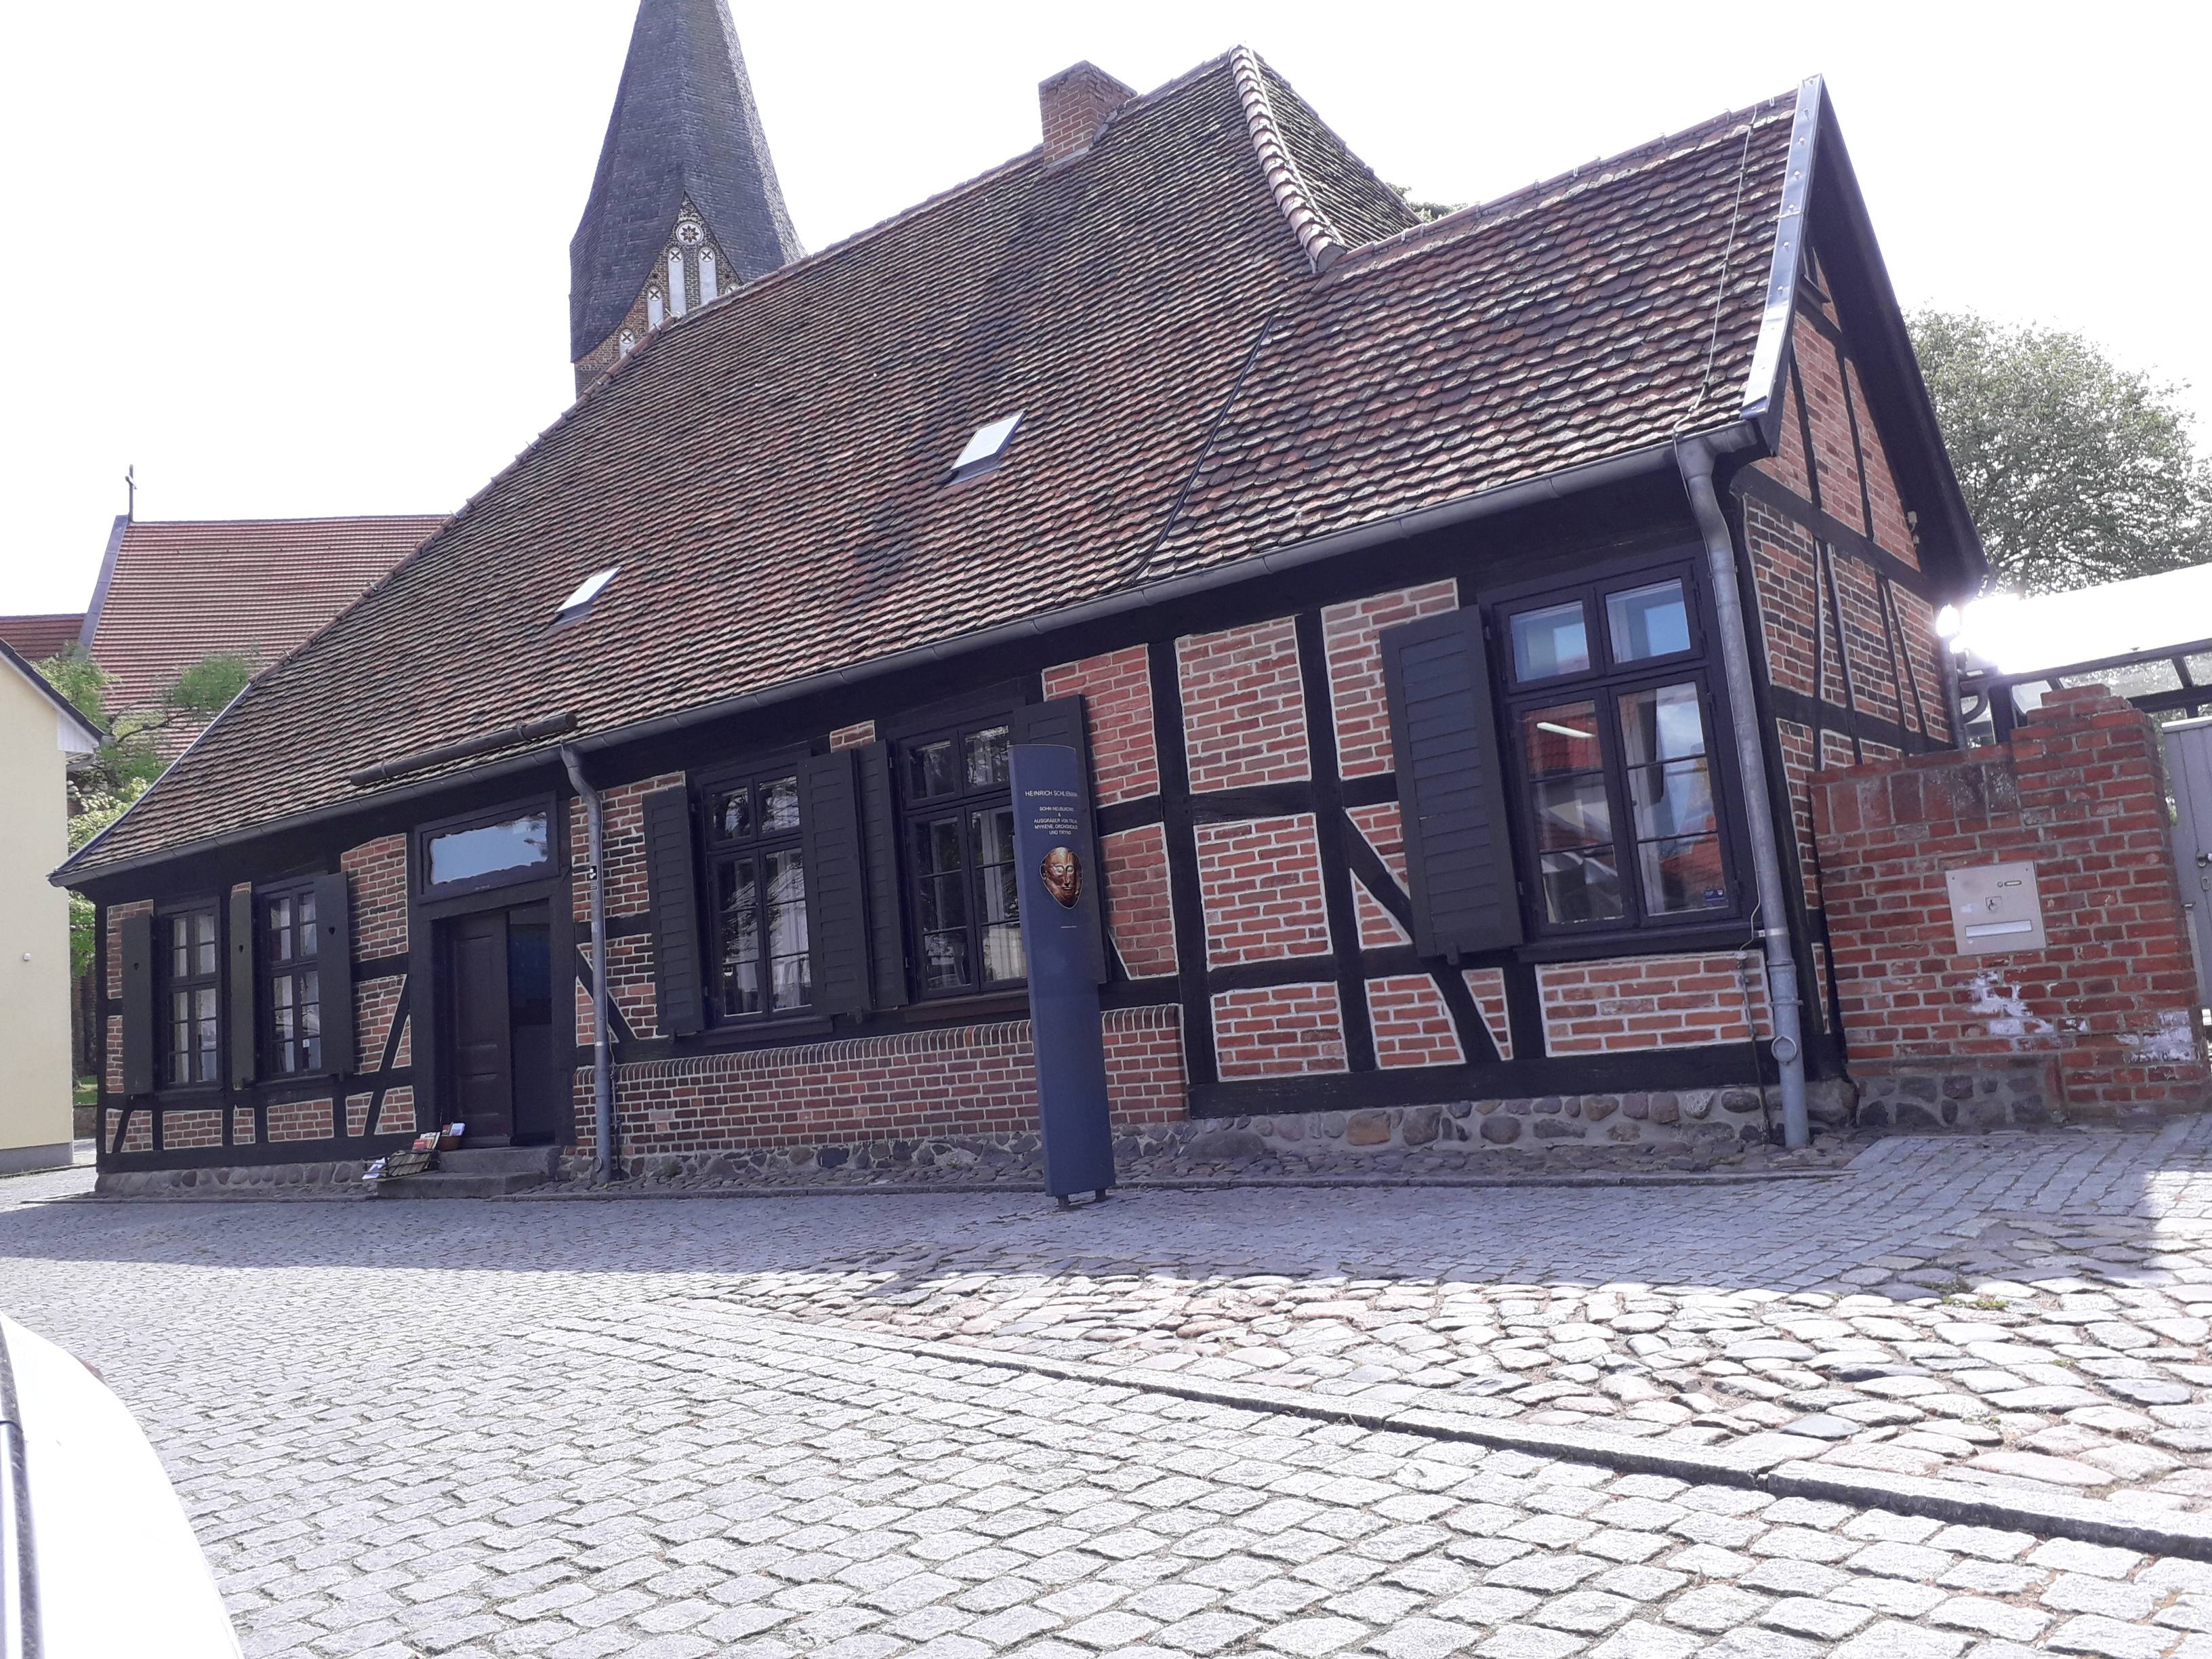 Bild 2 Stadtverwaltung Büro des Bürgermeisters Heinrich-Schliemann-Gedenkstätte in Neubukow